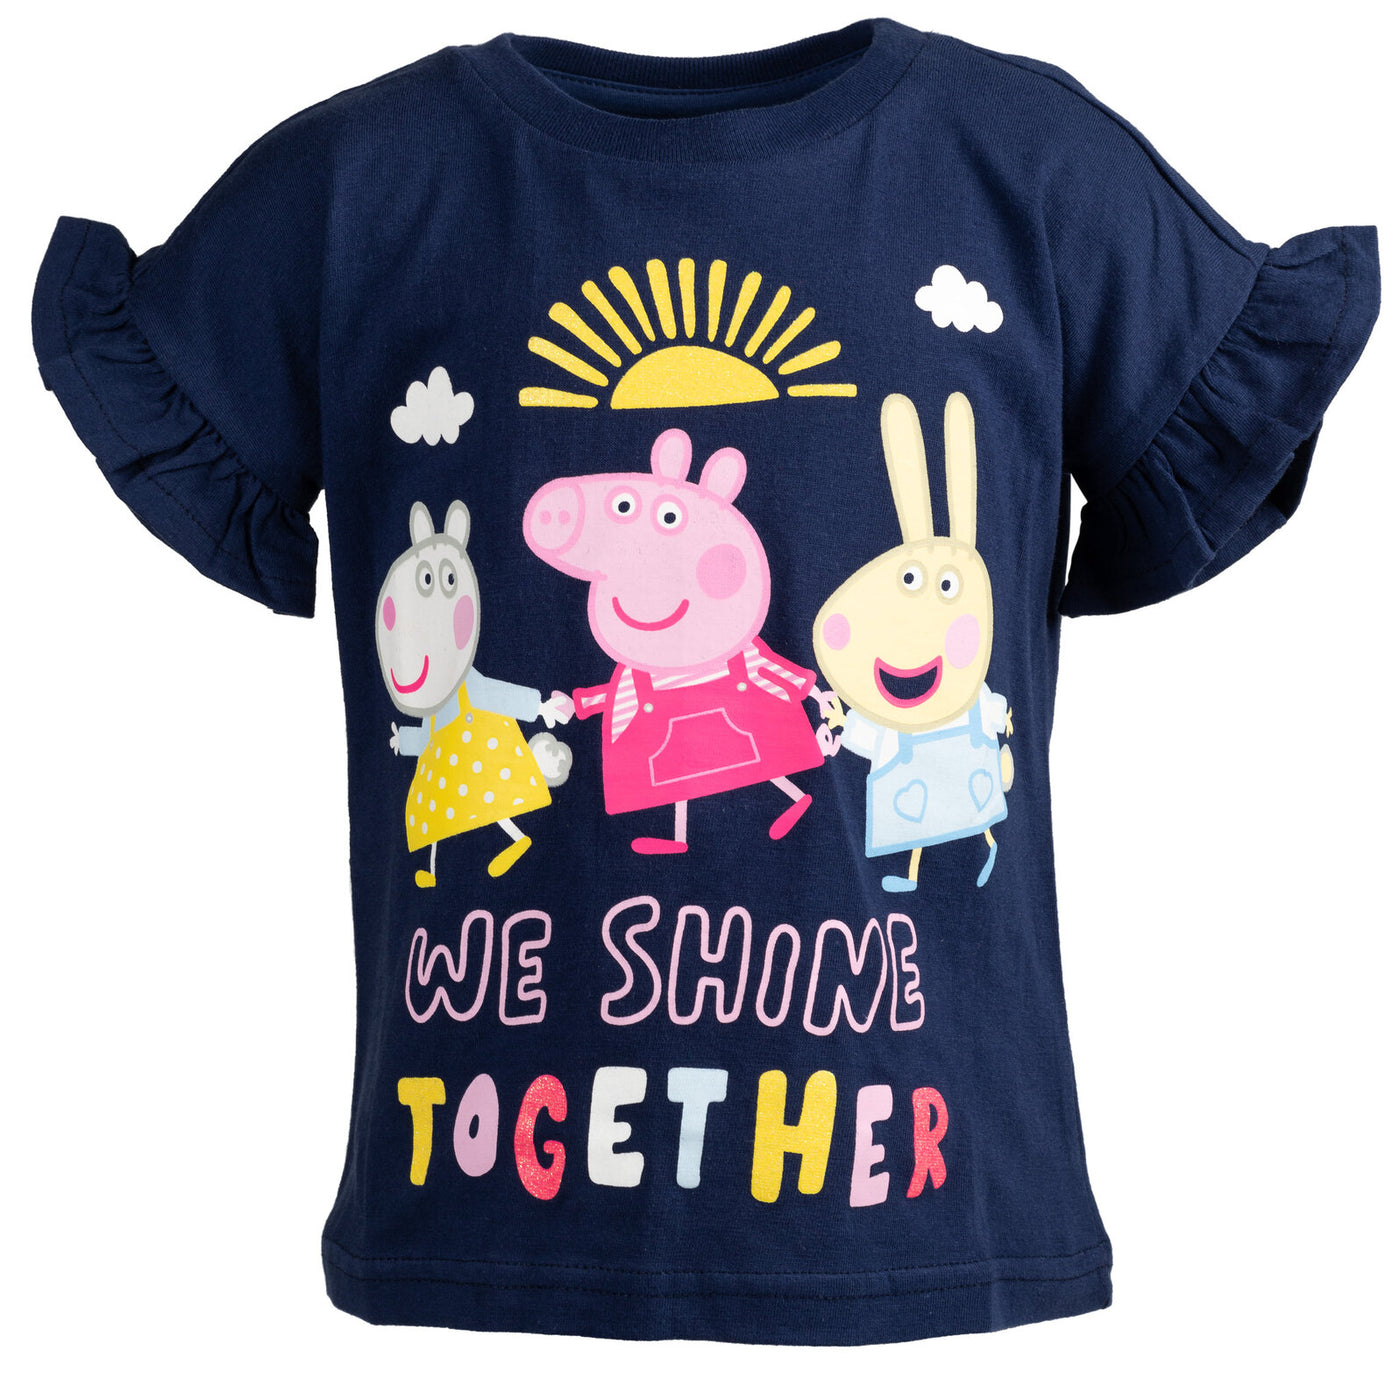 Pack de 2 camisetas de Peppa Pig